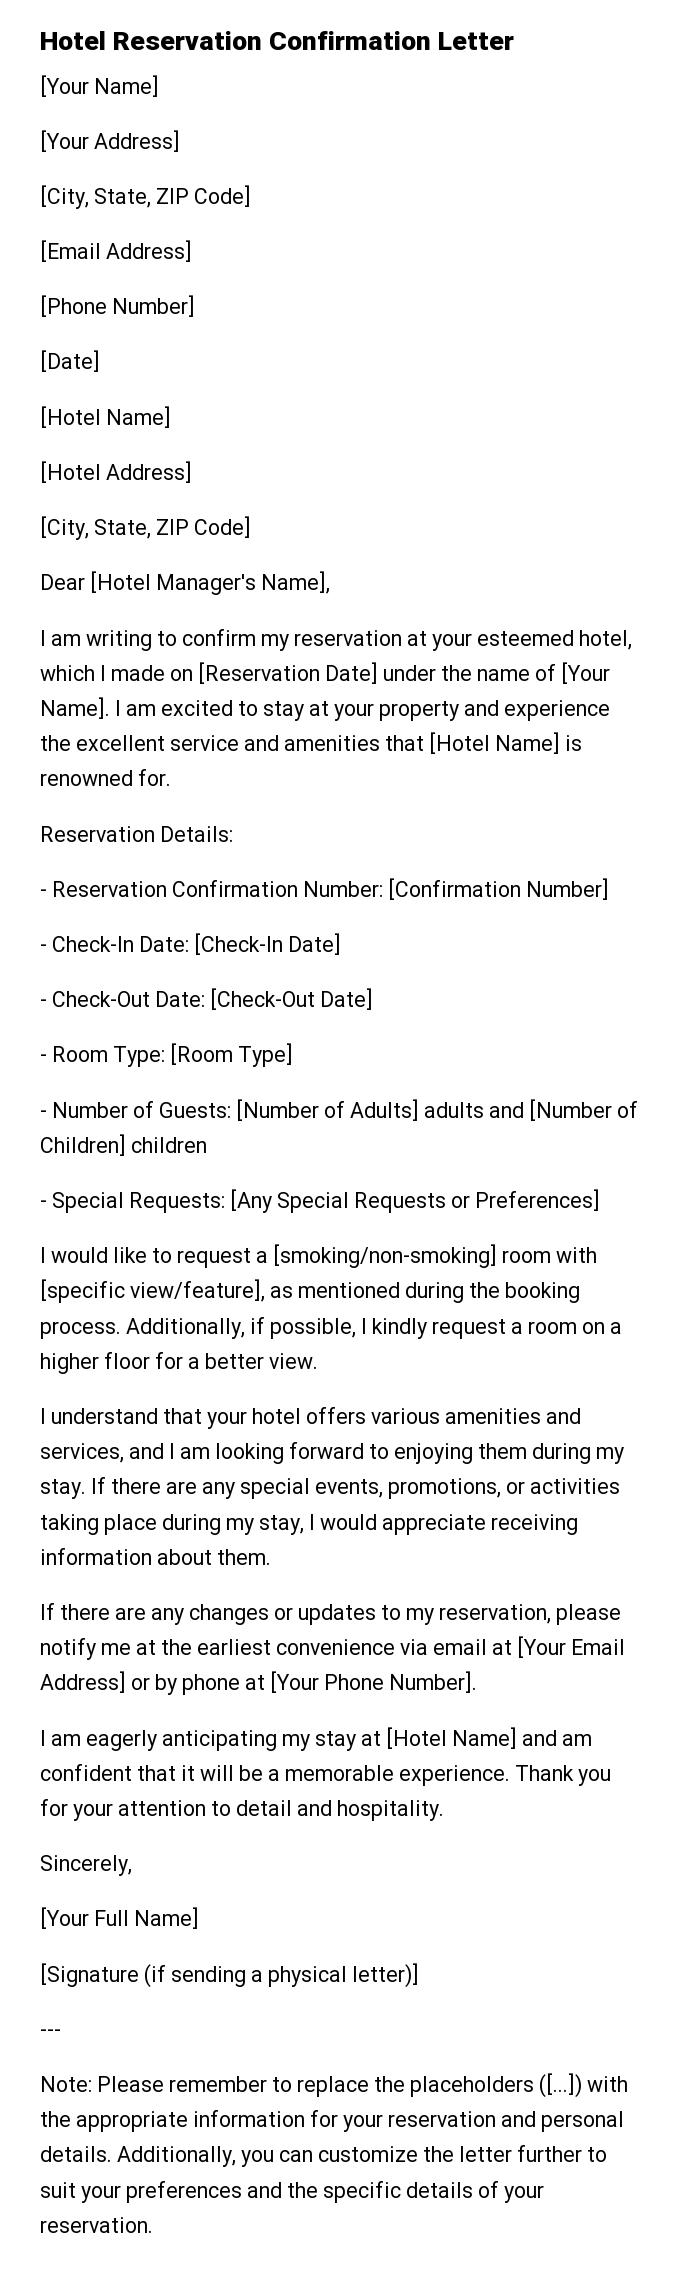 Hotel Reservation Confirmation Letter